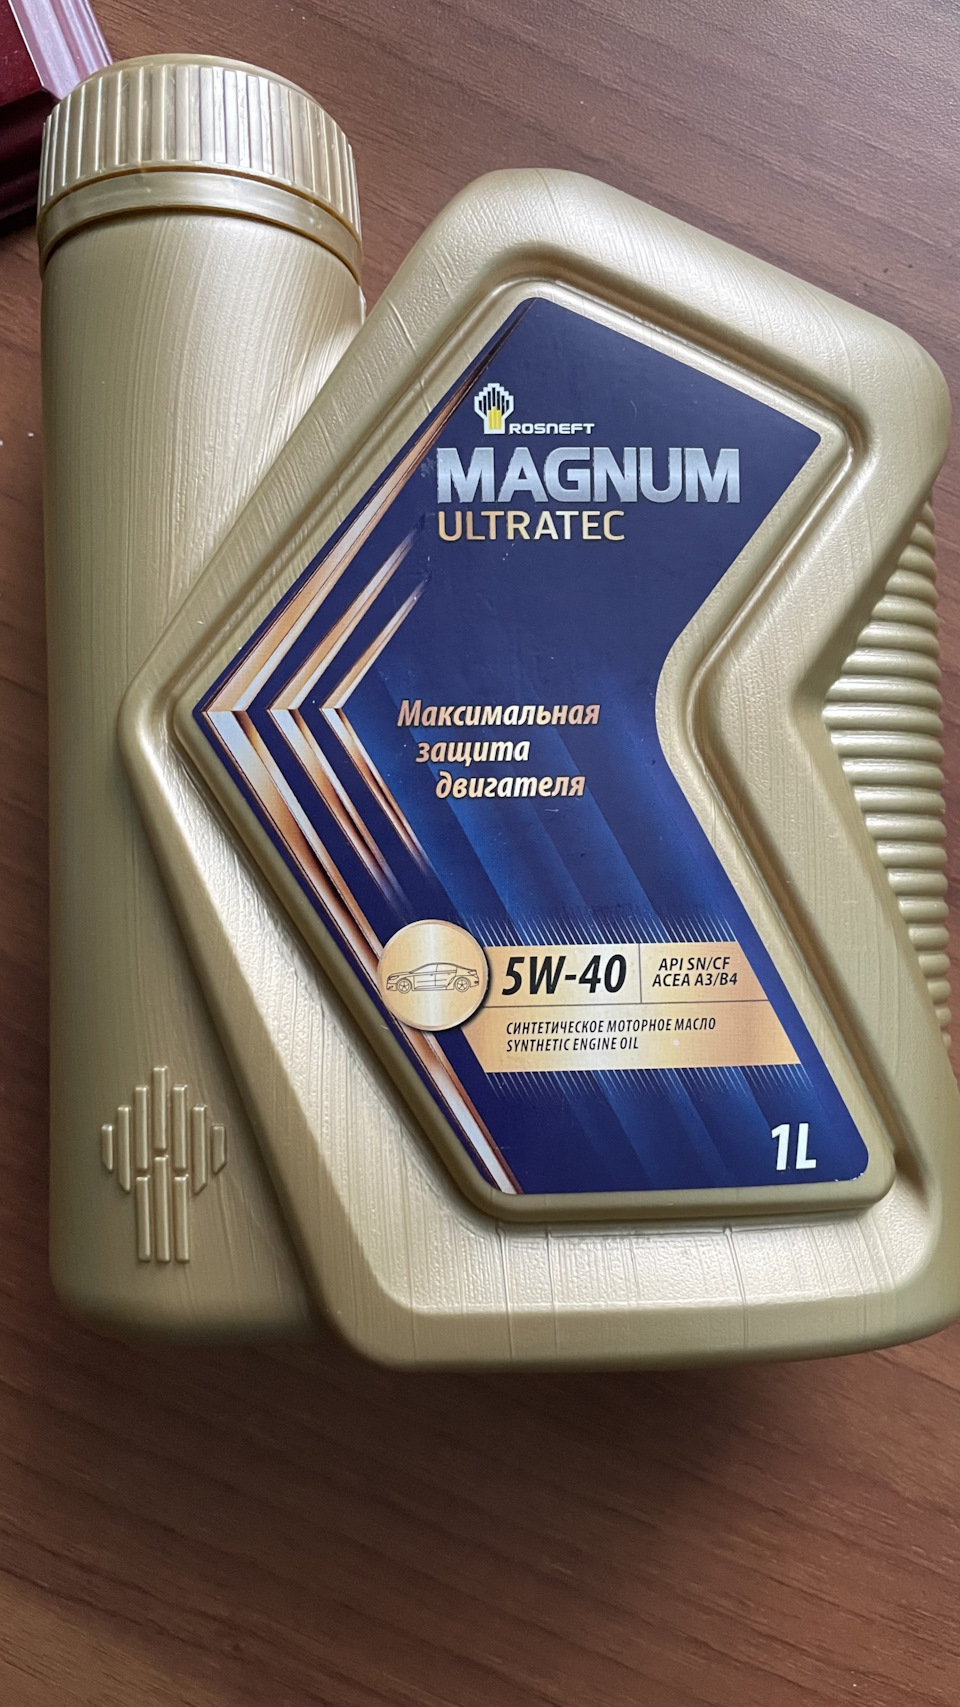 Цена масла магнум ультратек. Rosneft Magnum Ultratec 5w40 реклама. Rosneft Magnum Ultratec. Упаковка моторного масла Magnum Ultratec. Справка от производитель моторного масла Magnum Ultratec.